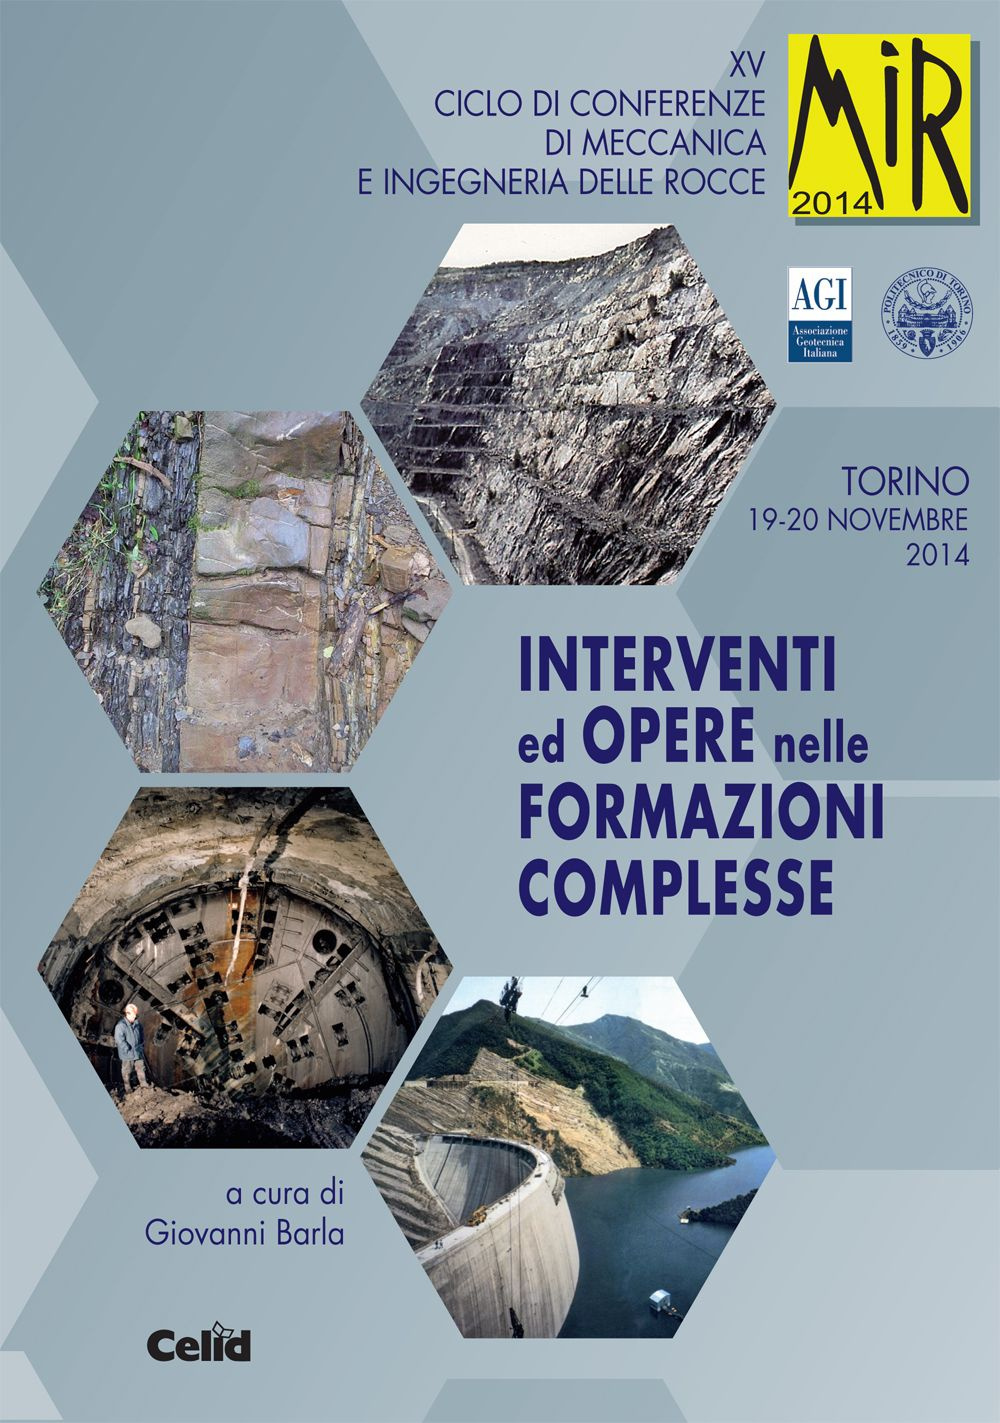 Interventi ed opere nelle formazioni complesse. 15° ciclo di conferenze di meccanica e ingegneria delle rocce (Torino, 19-20 novembre 2014)